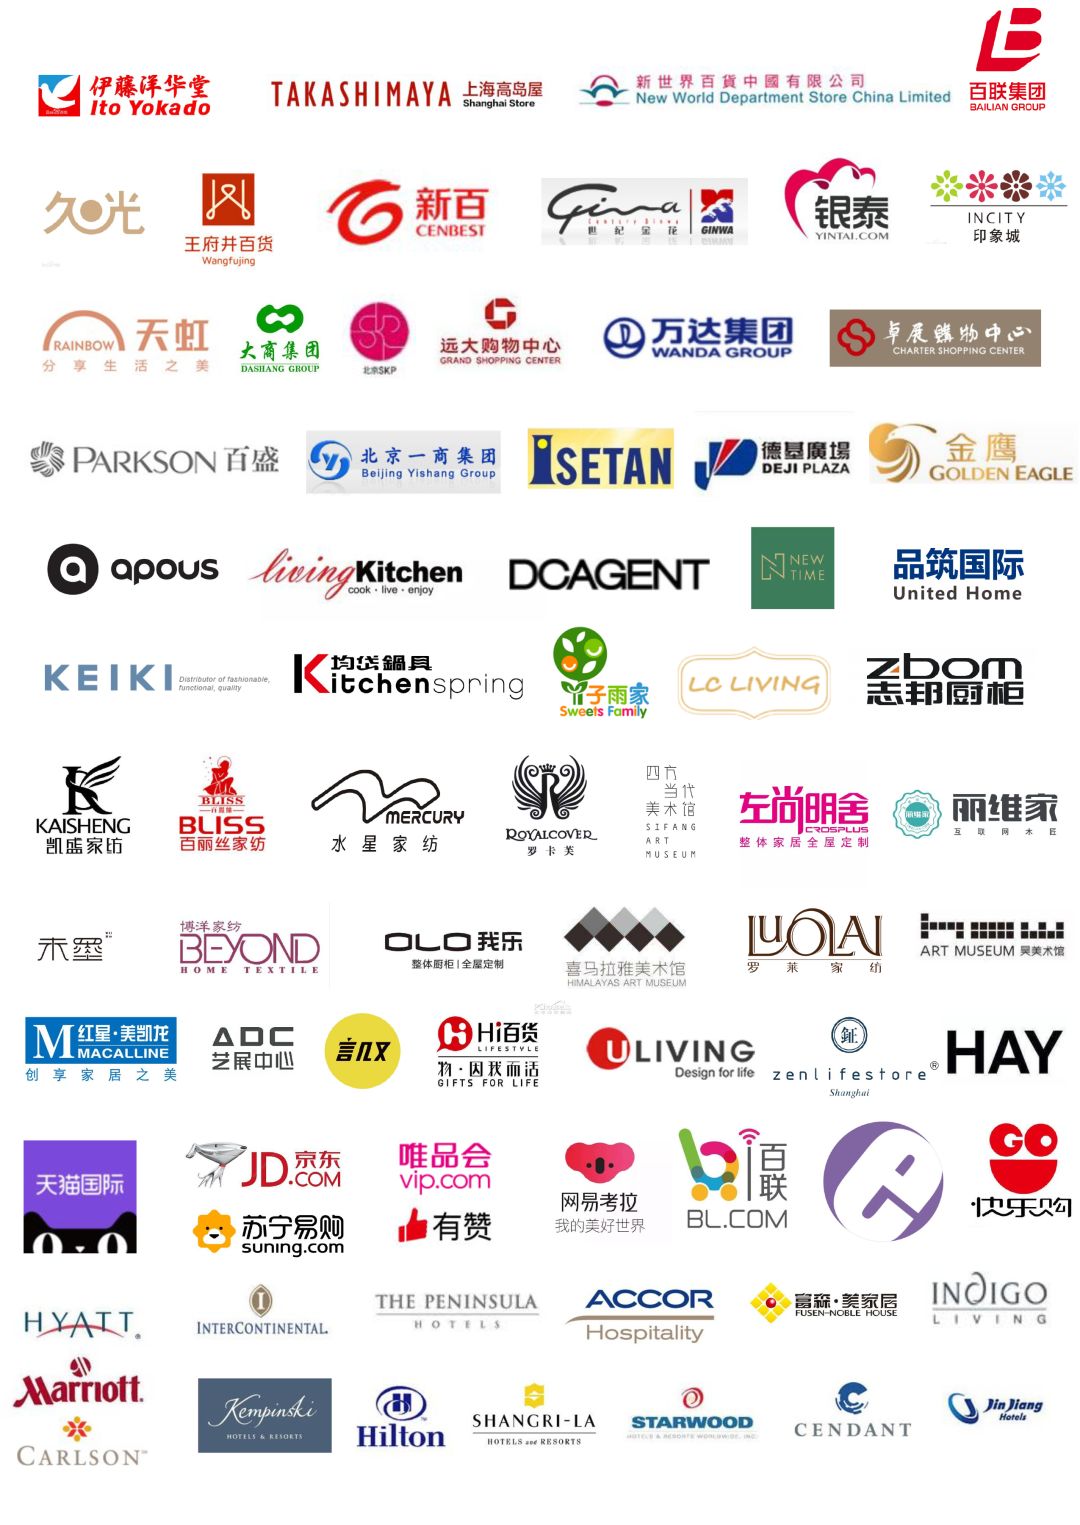 2021时尚家居展时间 上海展览中心